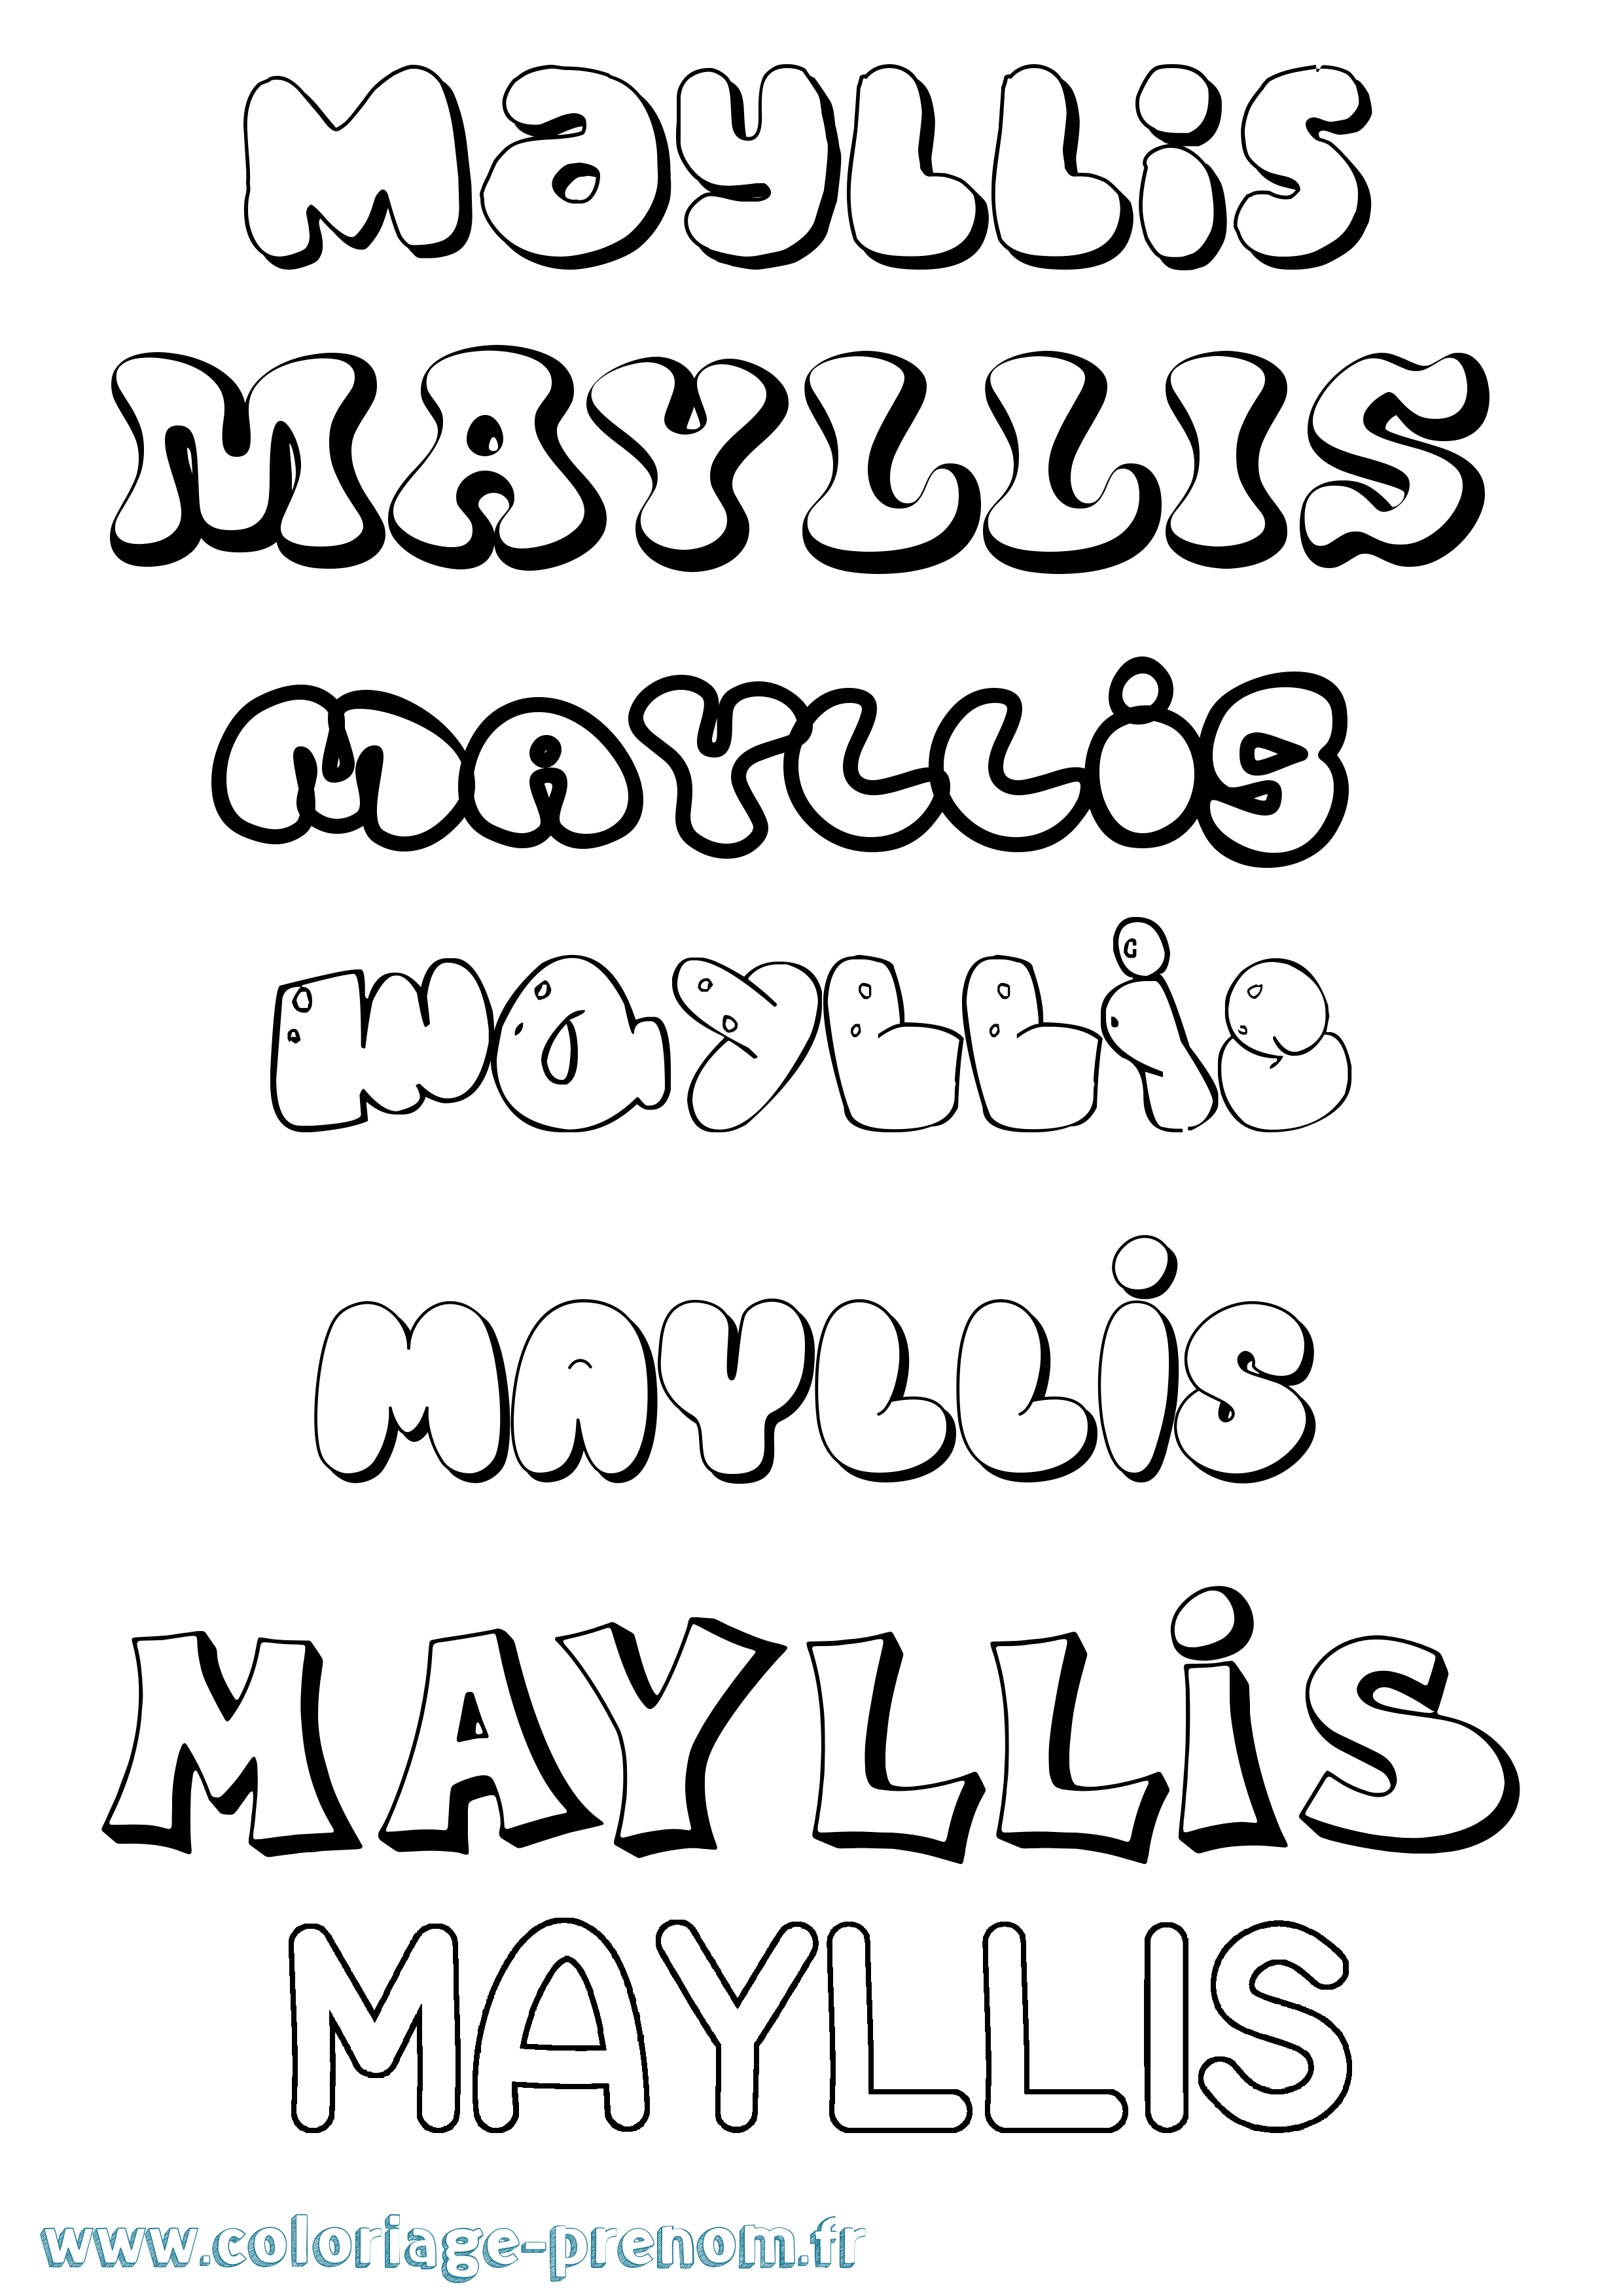 Coloriage prénom Mayllis Bubble